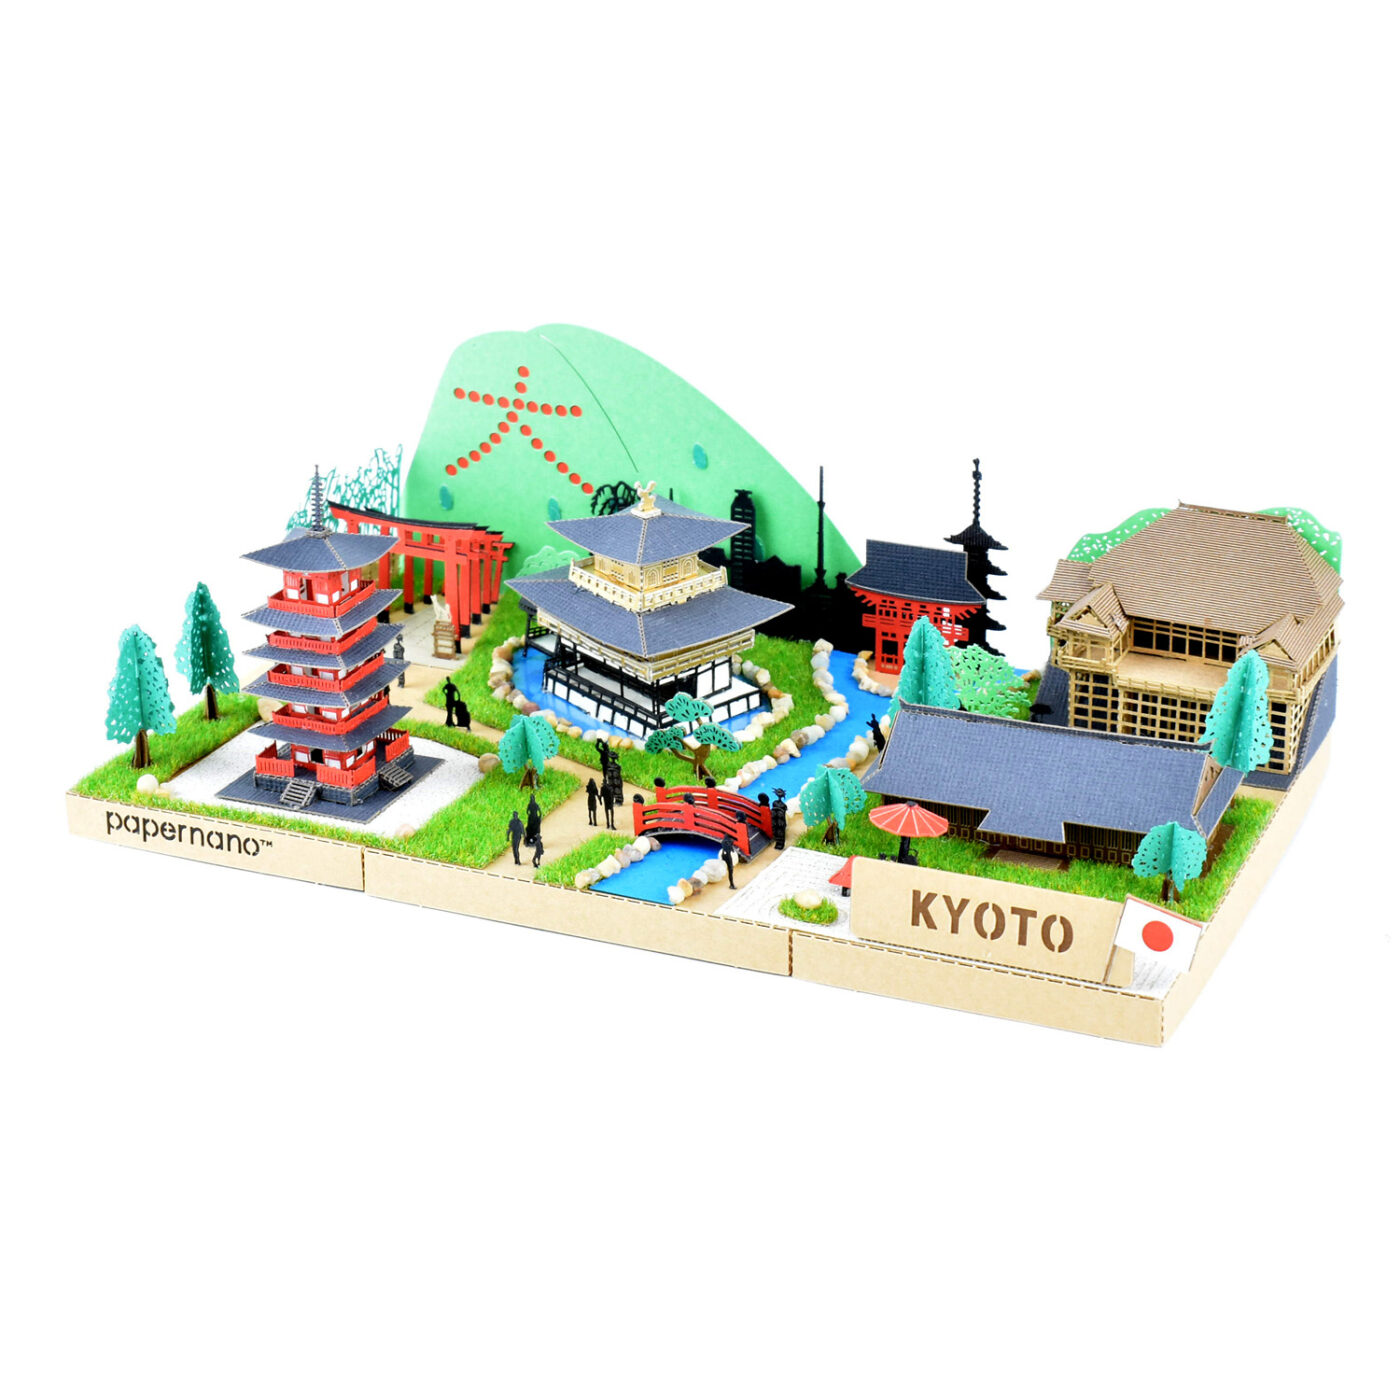 シティシリーズ 京都の商品画像